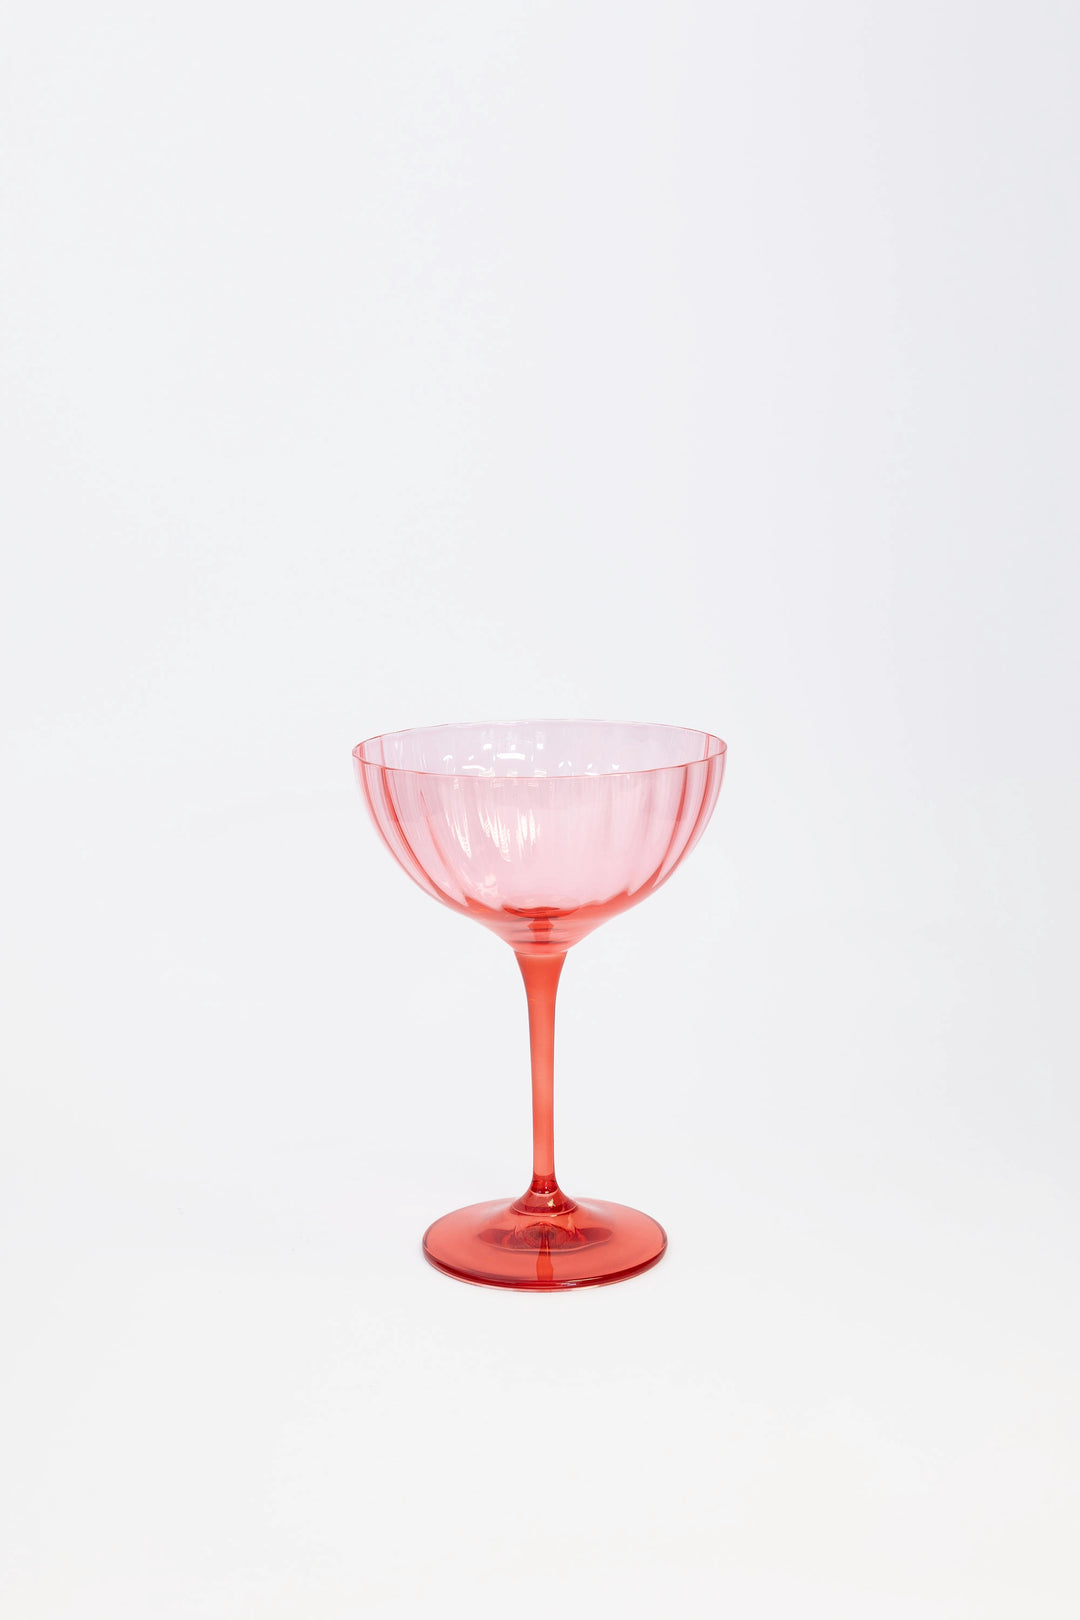 Anna + Nina Garden Pink Champagne Glass